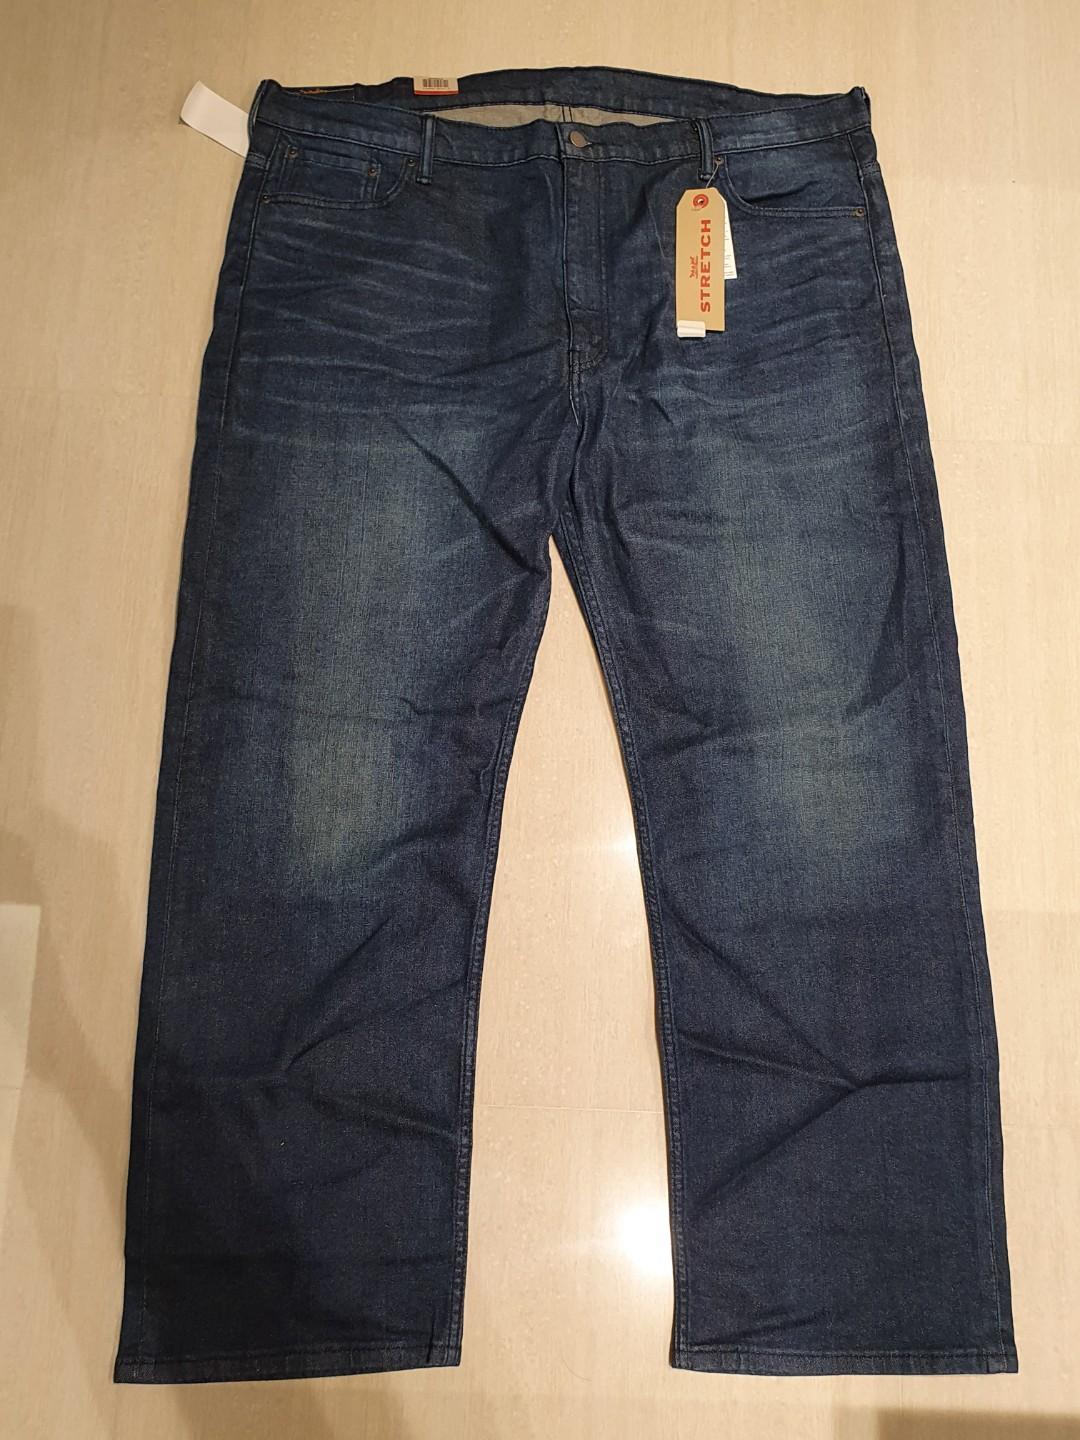 size 44 levi's jeans